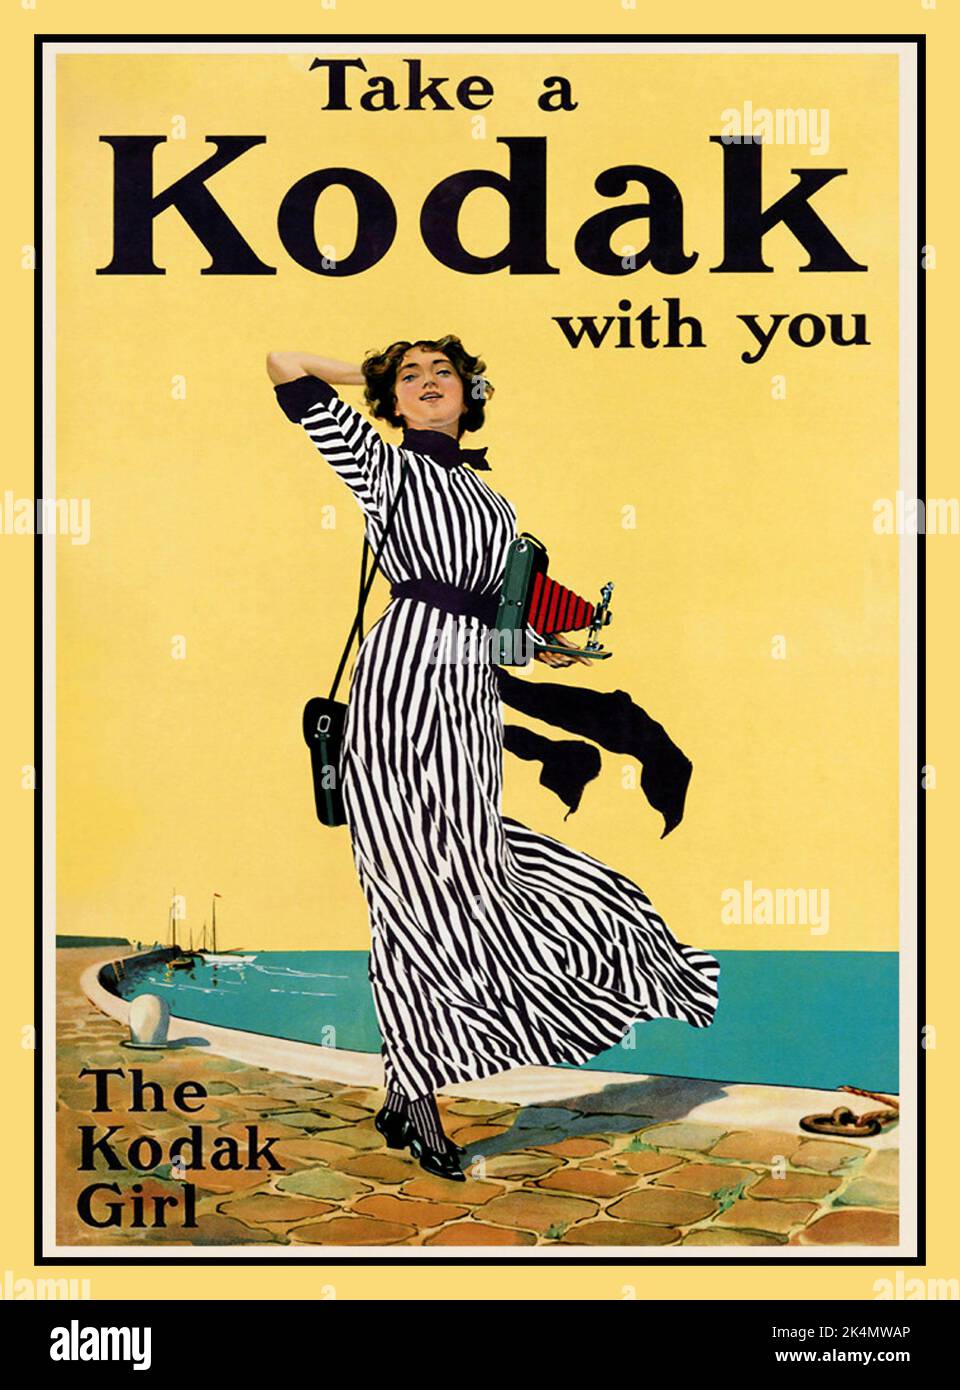 KODAK GIRL Vintage c1913 affiche « TAKE A KODAK WITH YOU », illustrant une femme indépendante qui tient un appareil photo à film pliable Kodak, au début d'une nouvelle ère technologique, adoptant une stratégie marketing tournée vers l'avenir d'Eastman Kodak qui comprenait le nouveau célèbre « Kodak Girl » Banque D'Images